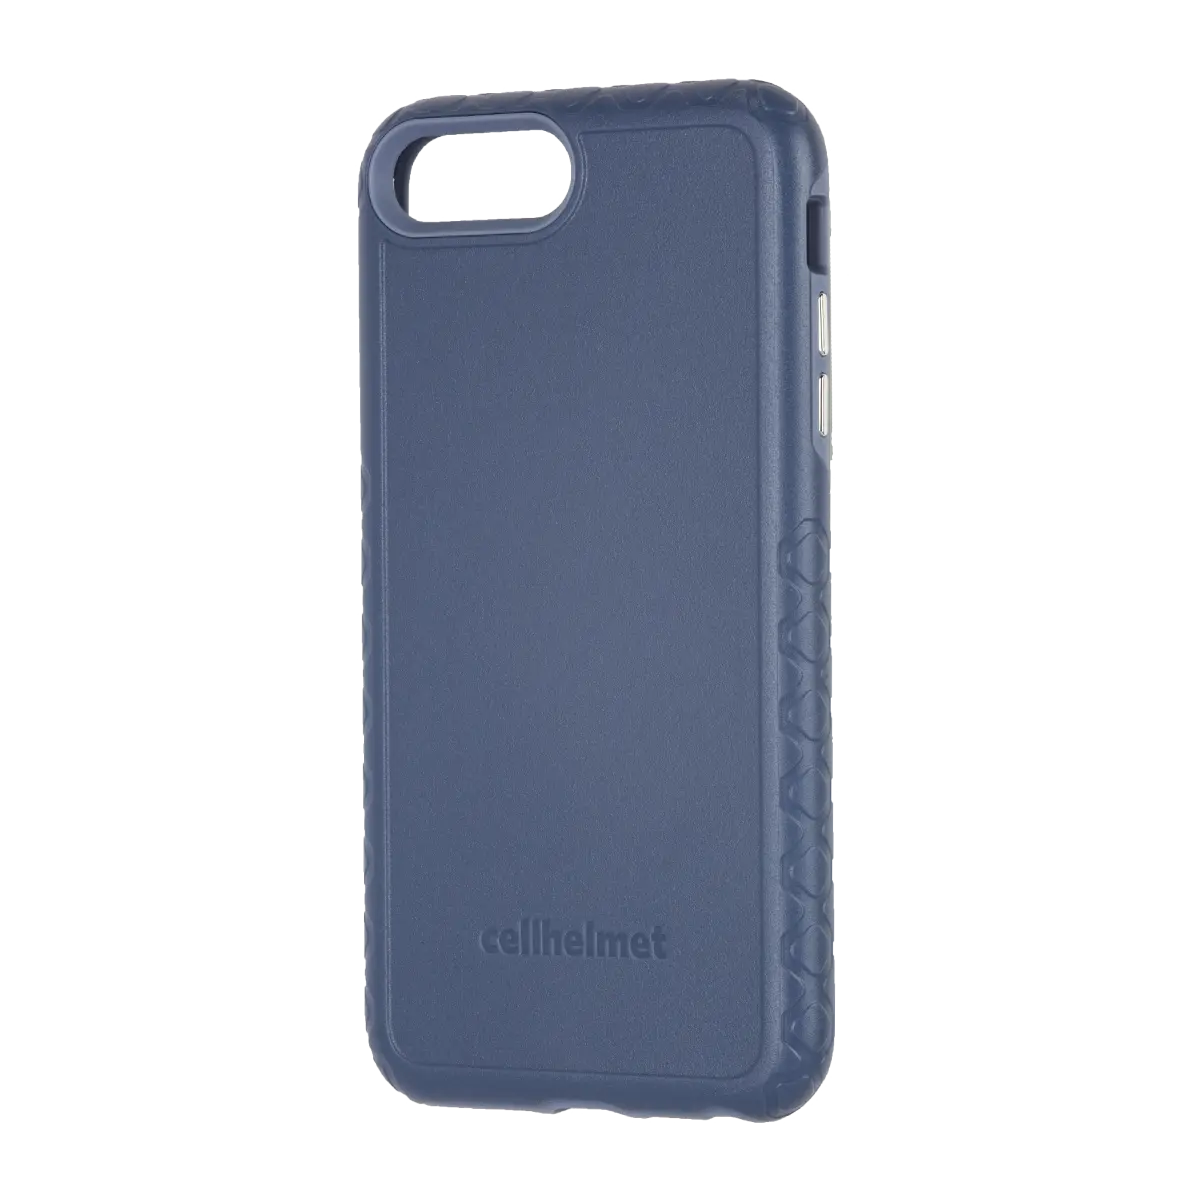 cellhelmet Blue Custom Case for iPhone 8 Plus